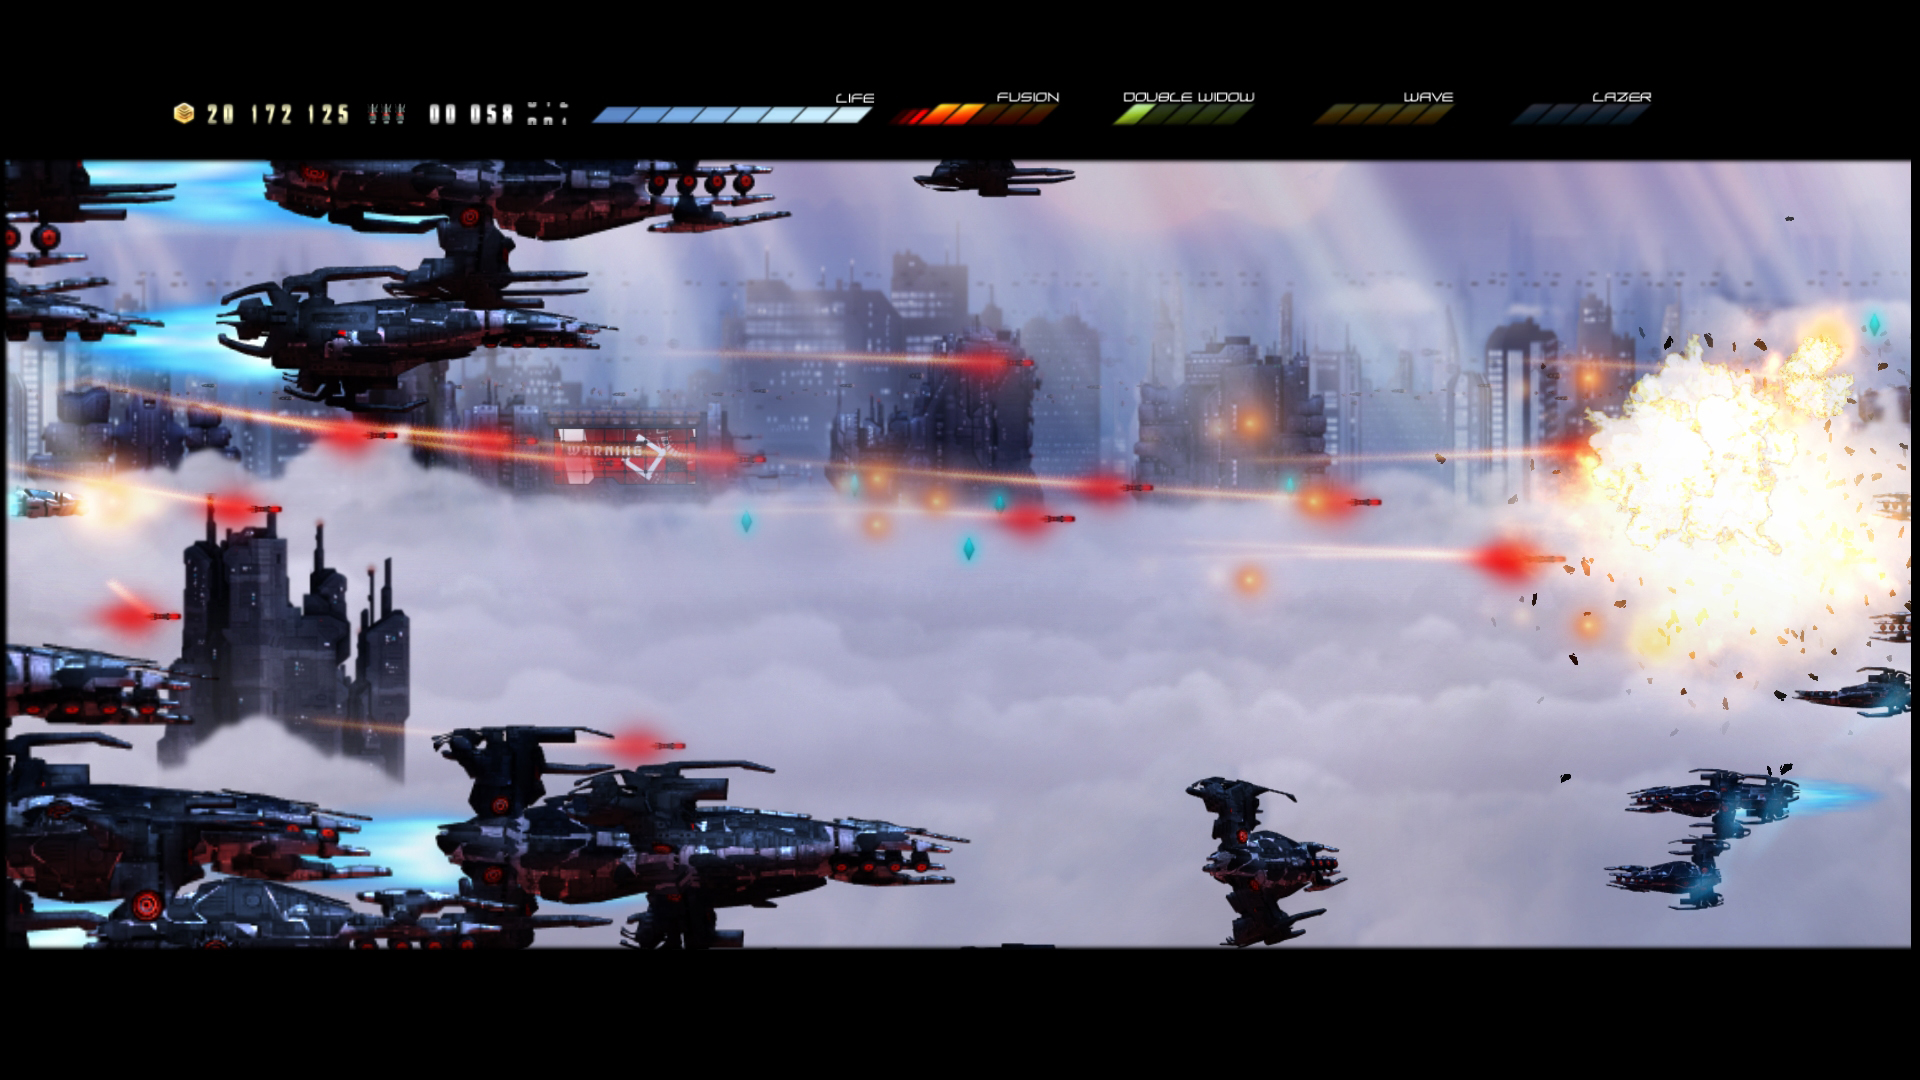 Huge Enemy - Worldbreakers screenshot